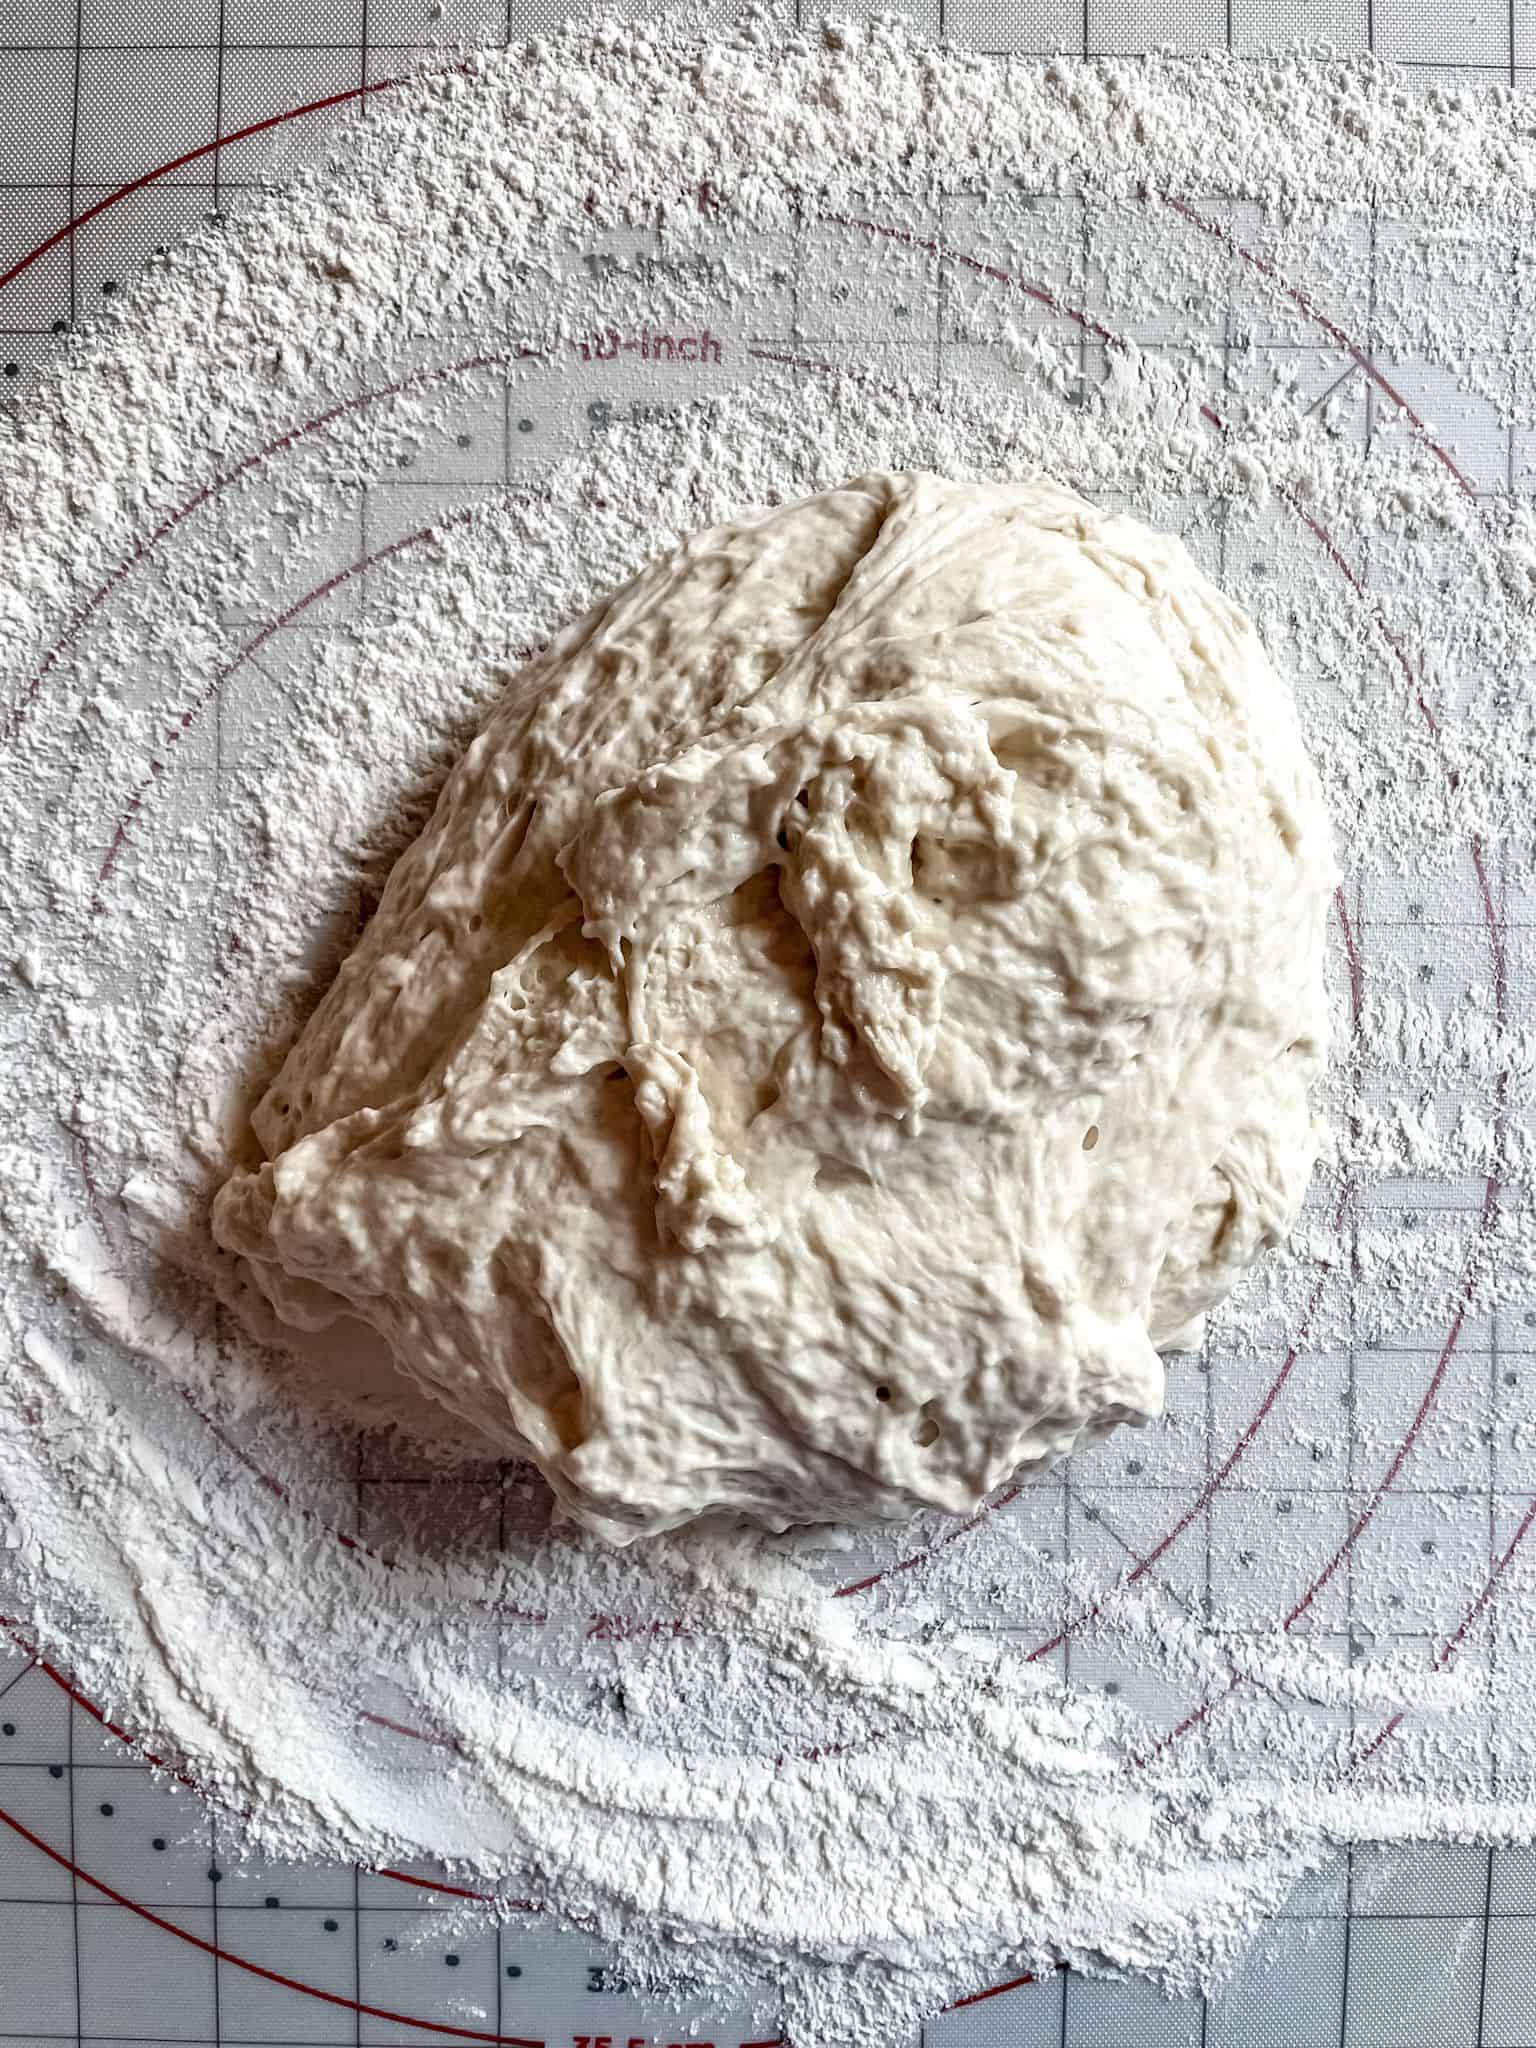 Raw bread dough on a floured surface.